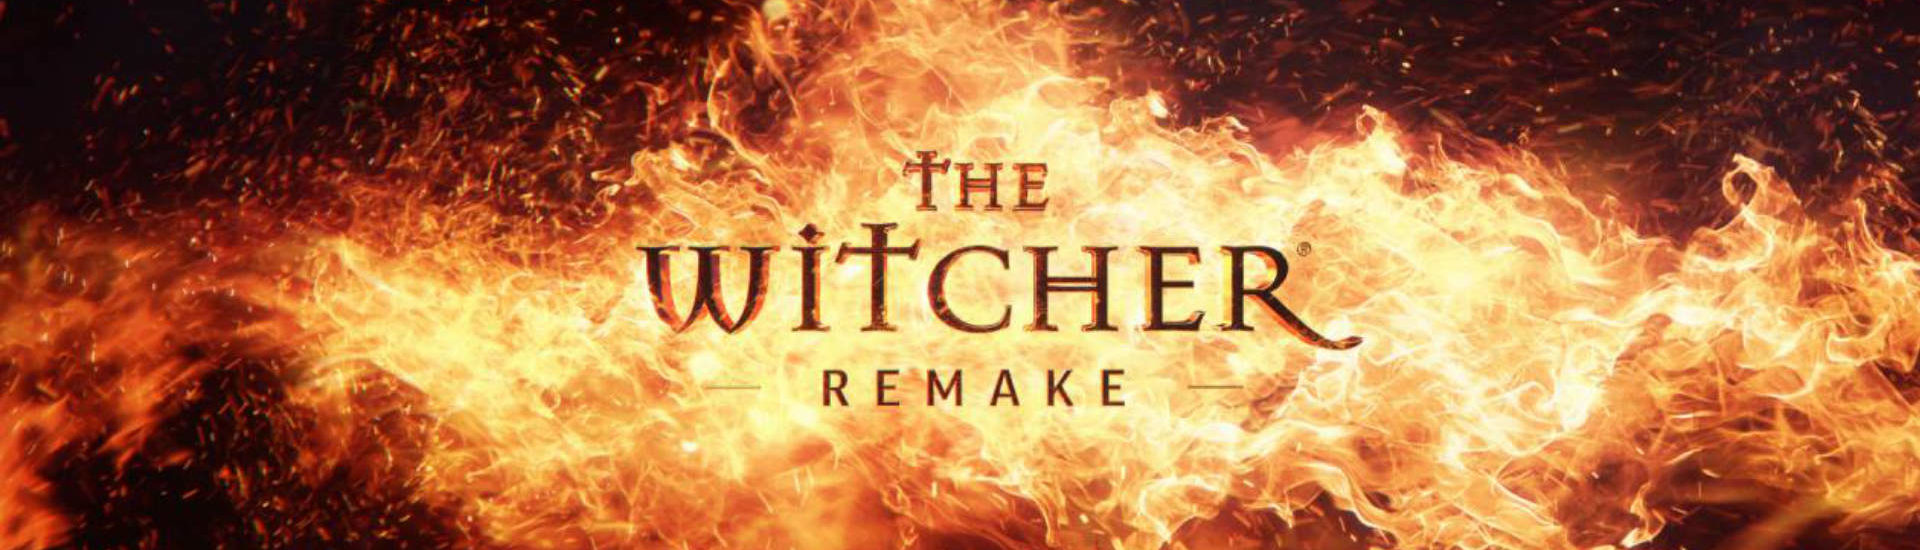 CD Projekt Red: The Witcher bekommt ein Remake